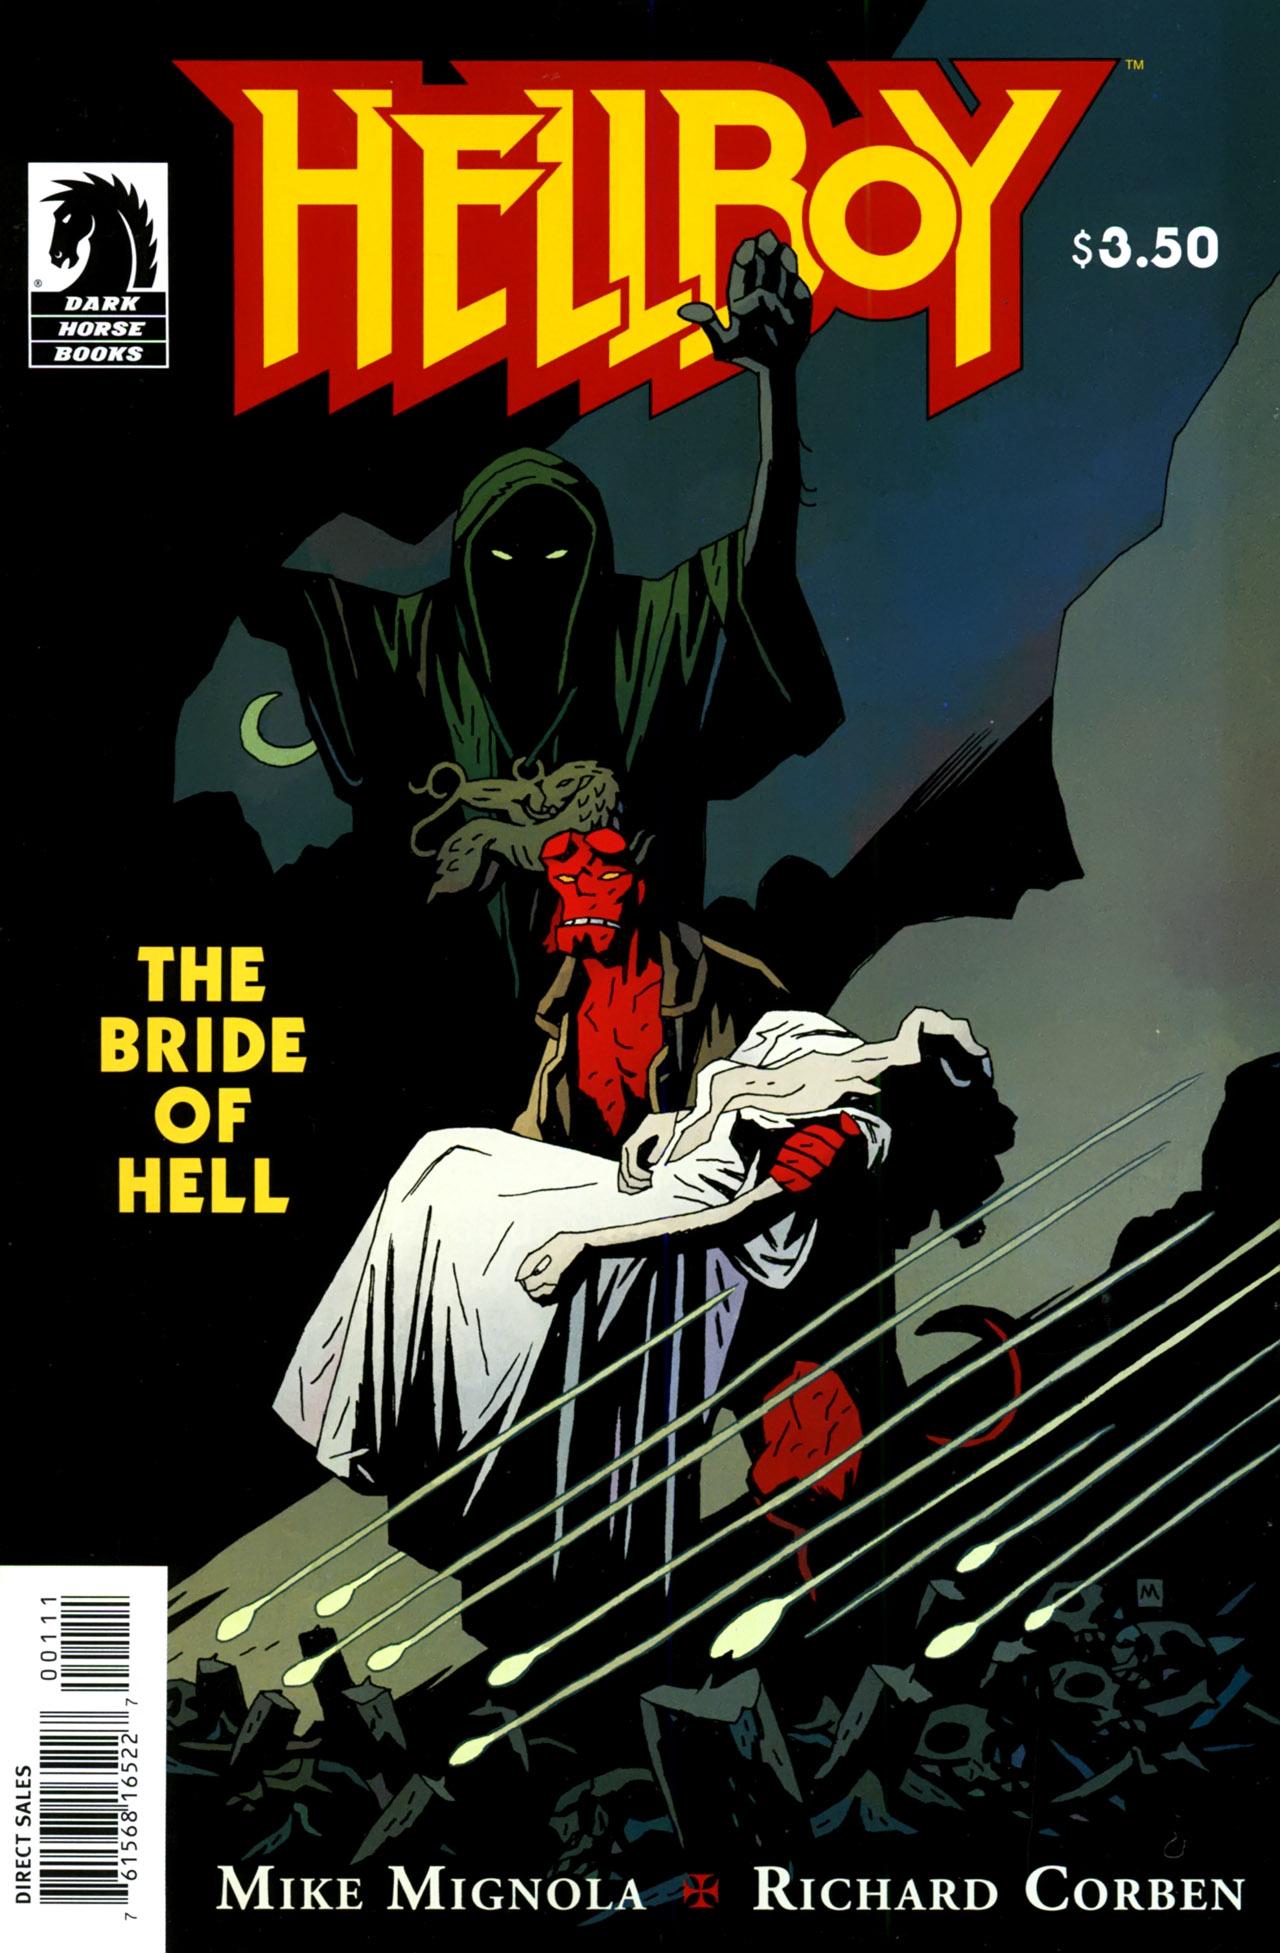 Hellboy: The Bride of Hell Vol. 1 #1